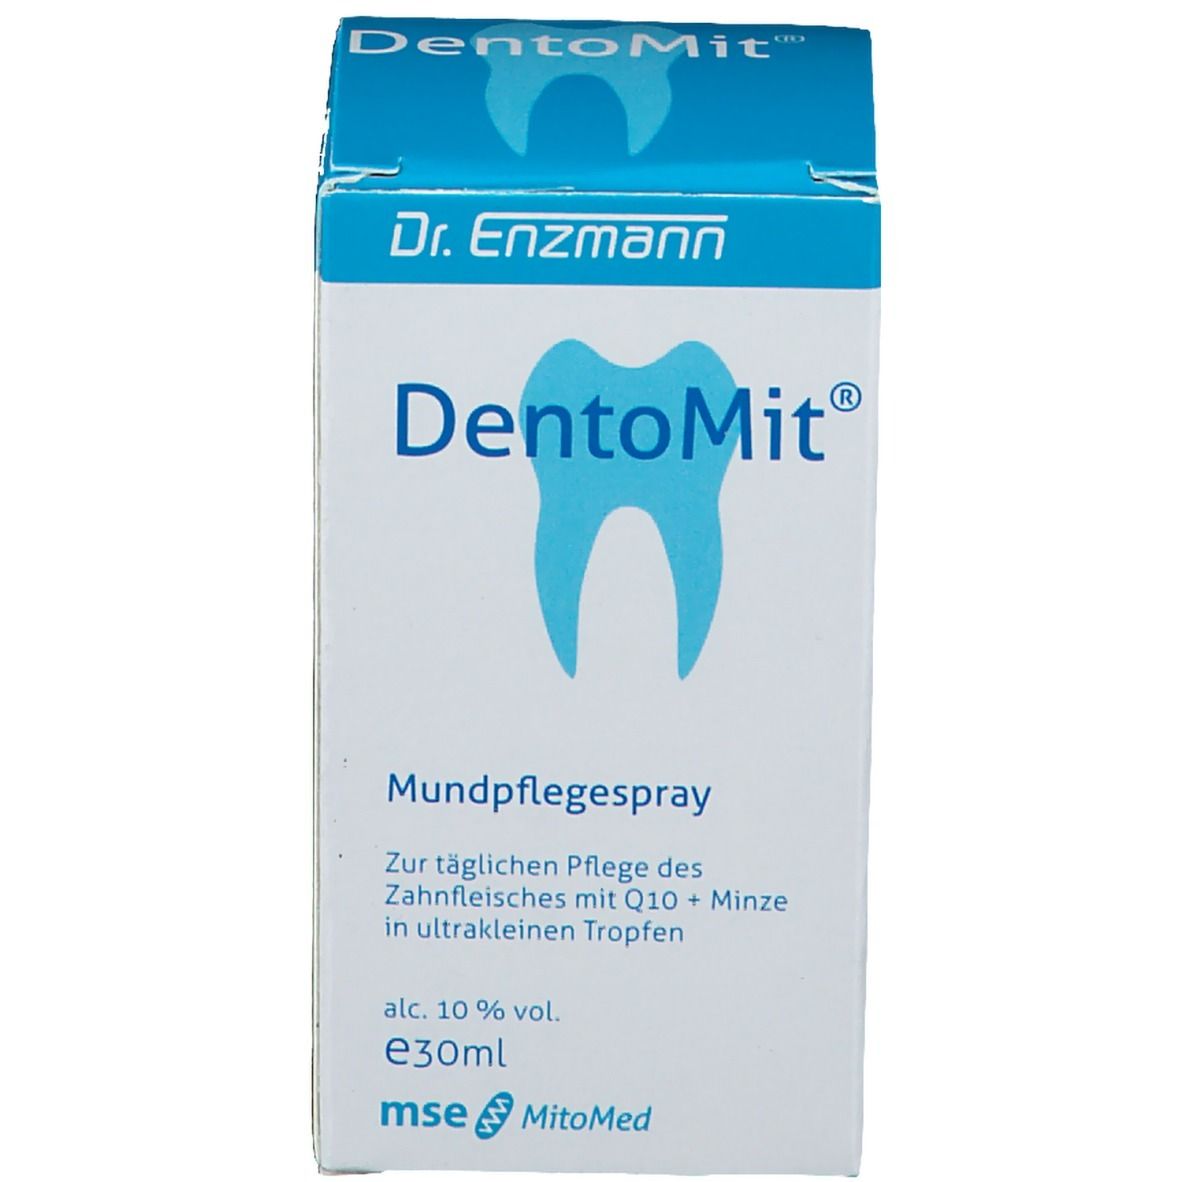 Dentomit Q 10 direkt Spray